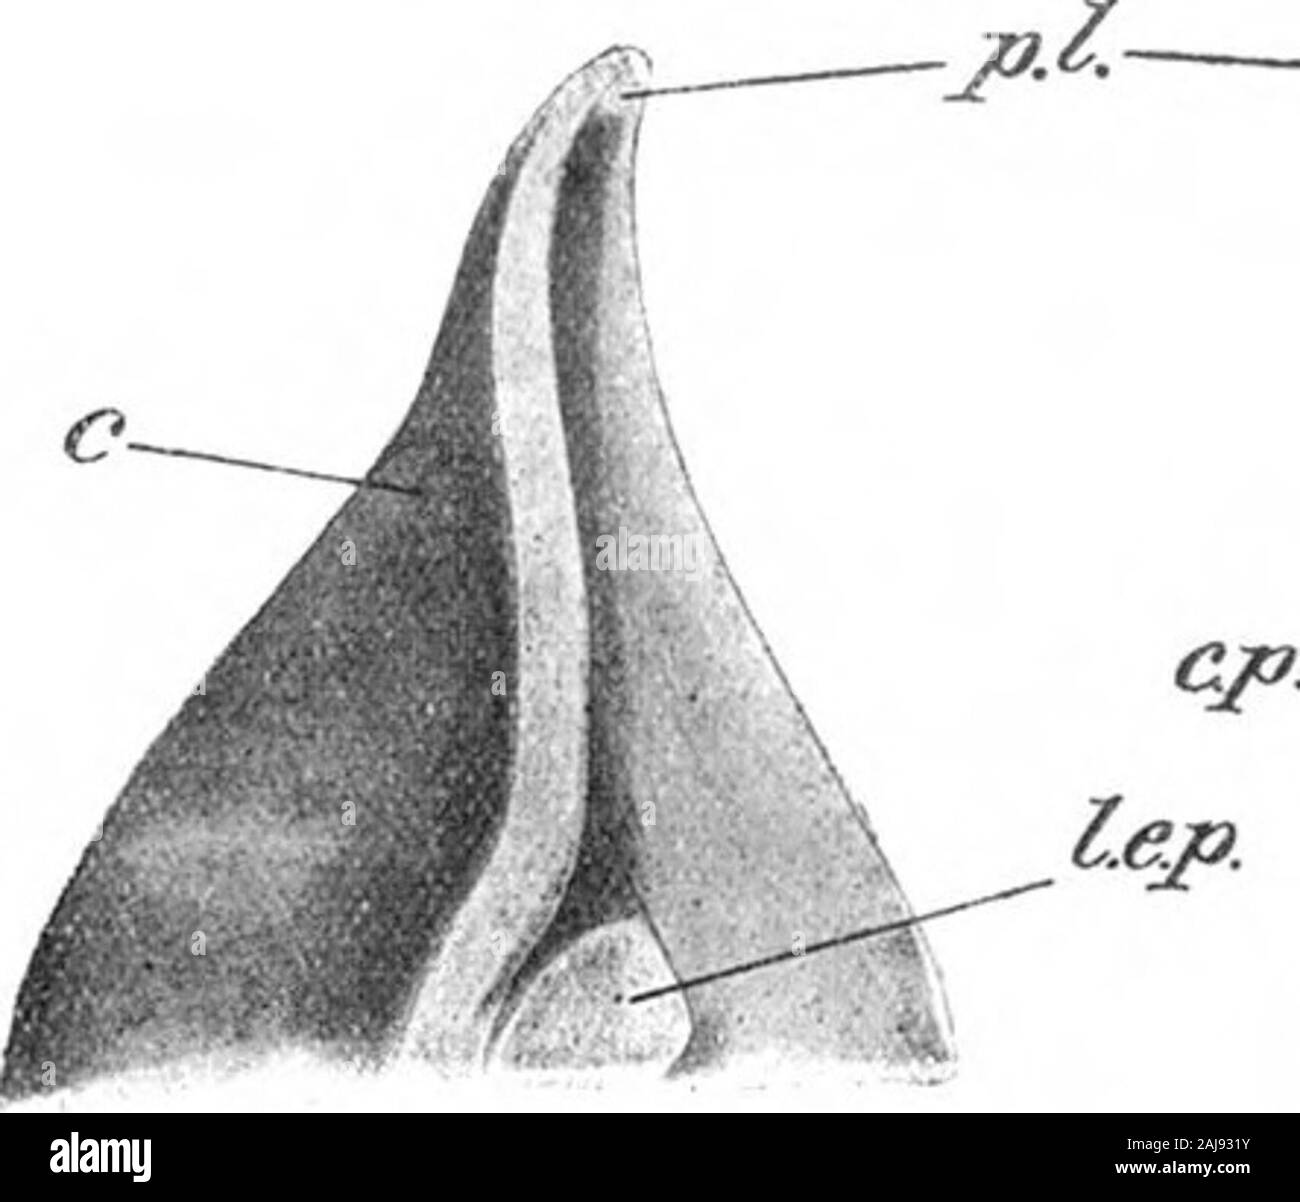 Über die Struktur und die Affinitäten der Paleodiscus und Agelacrinus. - Ajtt "Fia. 2 - Obere Ansicht von Agelacrinus cincinnaiiensis in der Oxford Museum: J, II, III, IV, F, sind Ambulacra; Ein^ Anus; F. S., Bodenbeläge Platten; s. c. p, y-Seite coyering Platten; m. c. s., Mund Platte angebracht werden. ^^^^^^^^^^^^^^^^^r^^^^^^^-^1 H^mJ^^ | H^^^V^J^ sm flB m-yyo^^^^^o^/y 3^Bl&gt;^® ^^W^L&gt; ^^v/^ HHH^T-)&gt;^aO^^^^^^^^^^^^^v ich Tkxt FiO. 1.-ventrale Palaodisotis sTirfaco von Ferox rekonstruiert aus ycvenilspecimens in Zinn Oxford Museum; ich. Iap., initijil interambulucra! Piiite; bin. s., lunbulucnil pliites; rk. s., rliomboidal Stockfoto